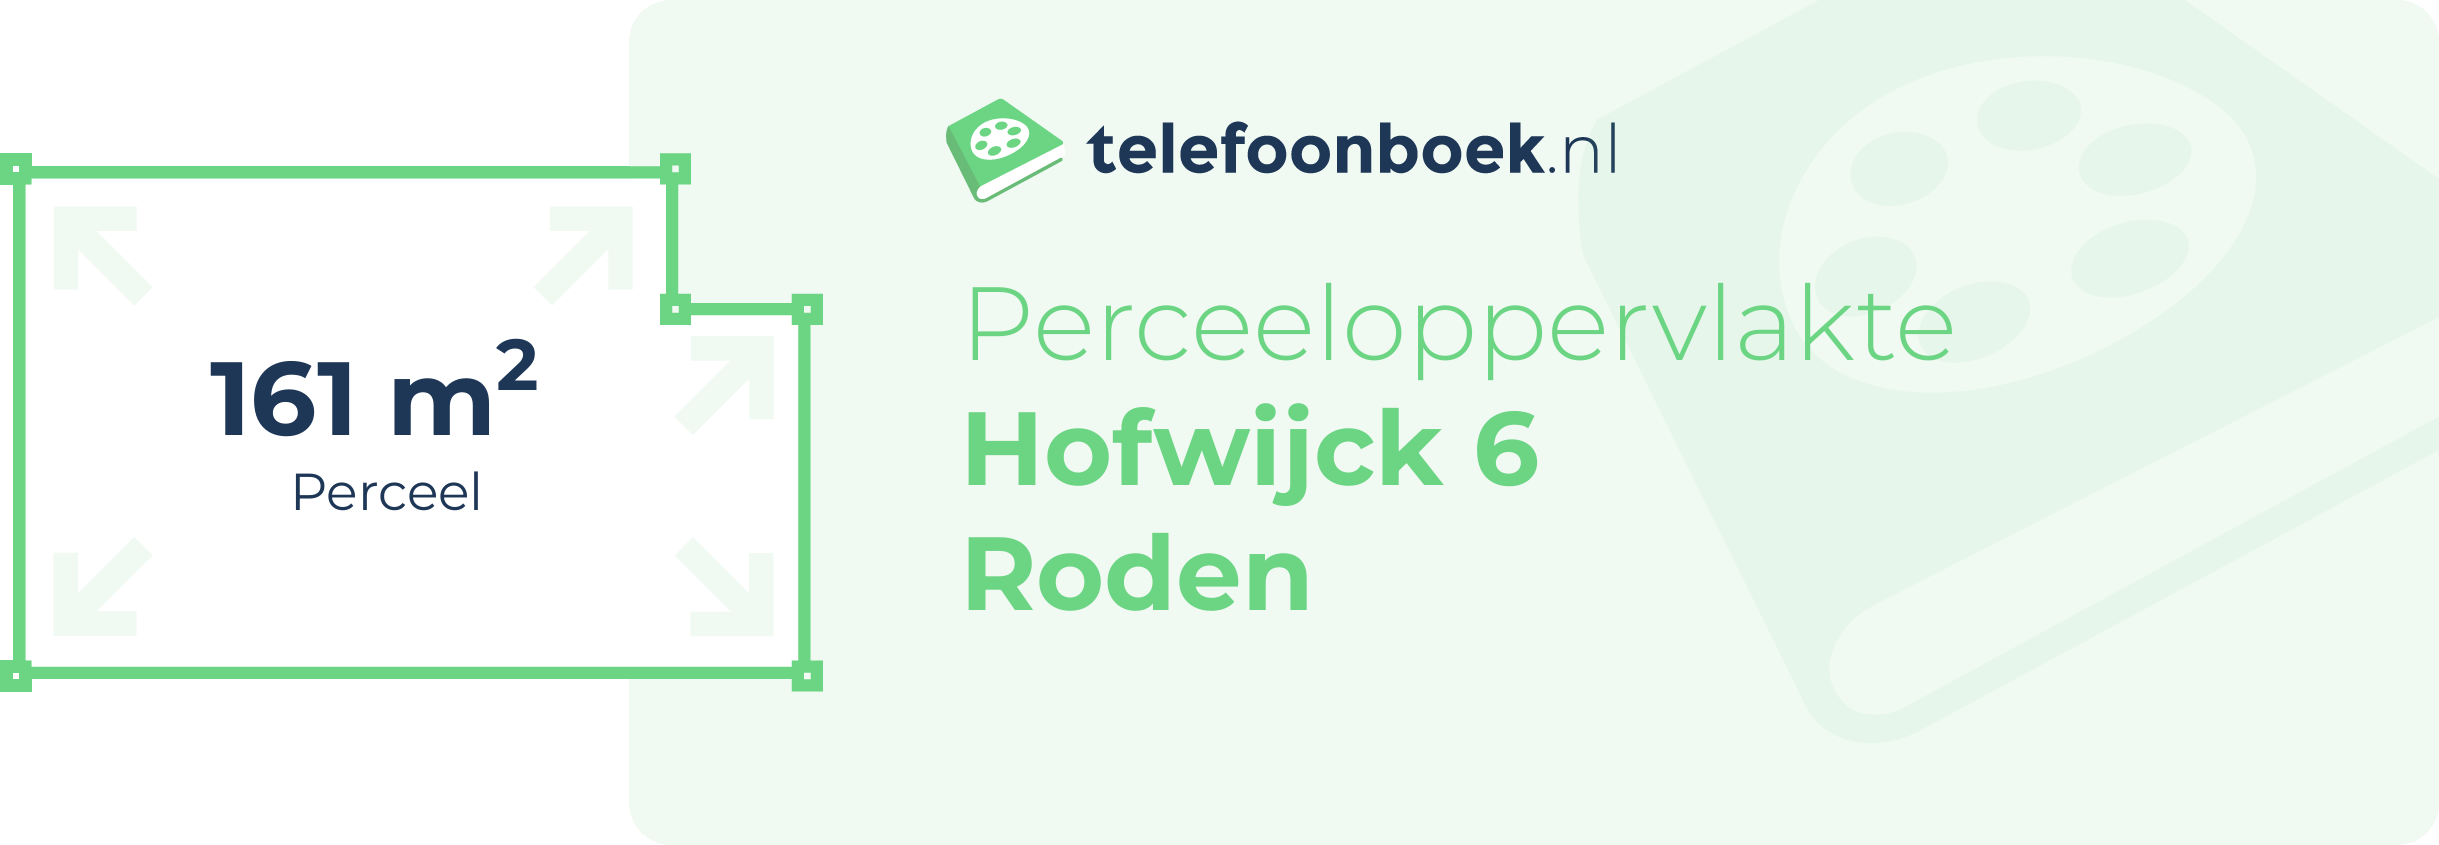 Perceeloppervlakte Hofwijck 6 Roden